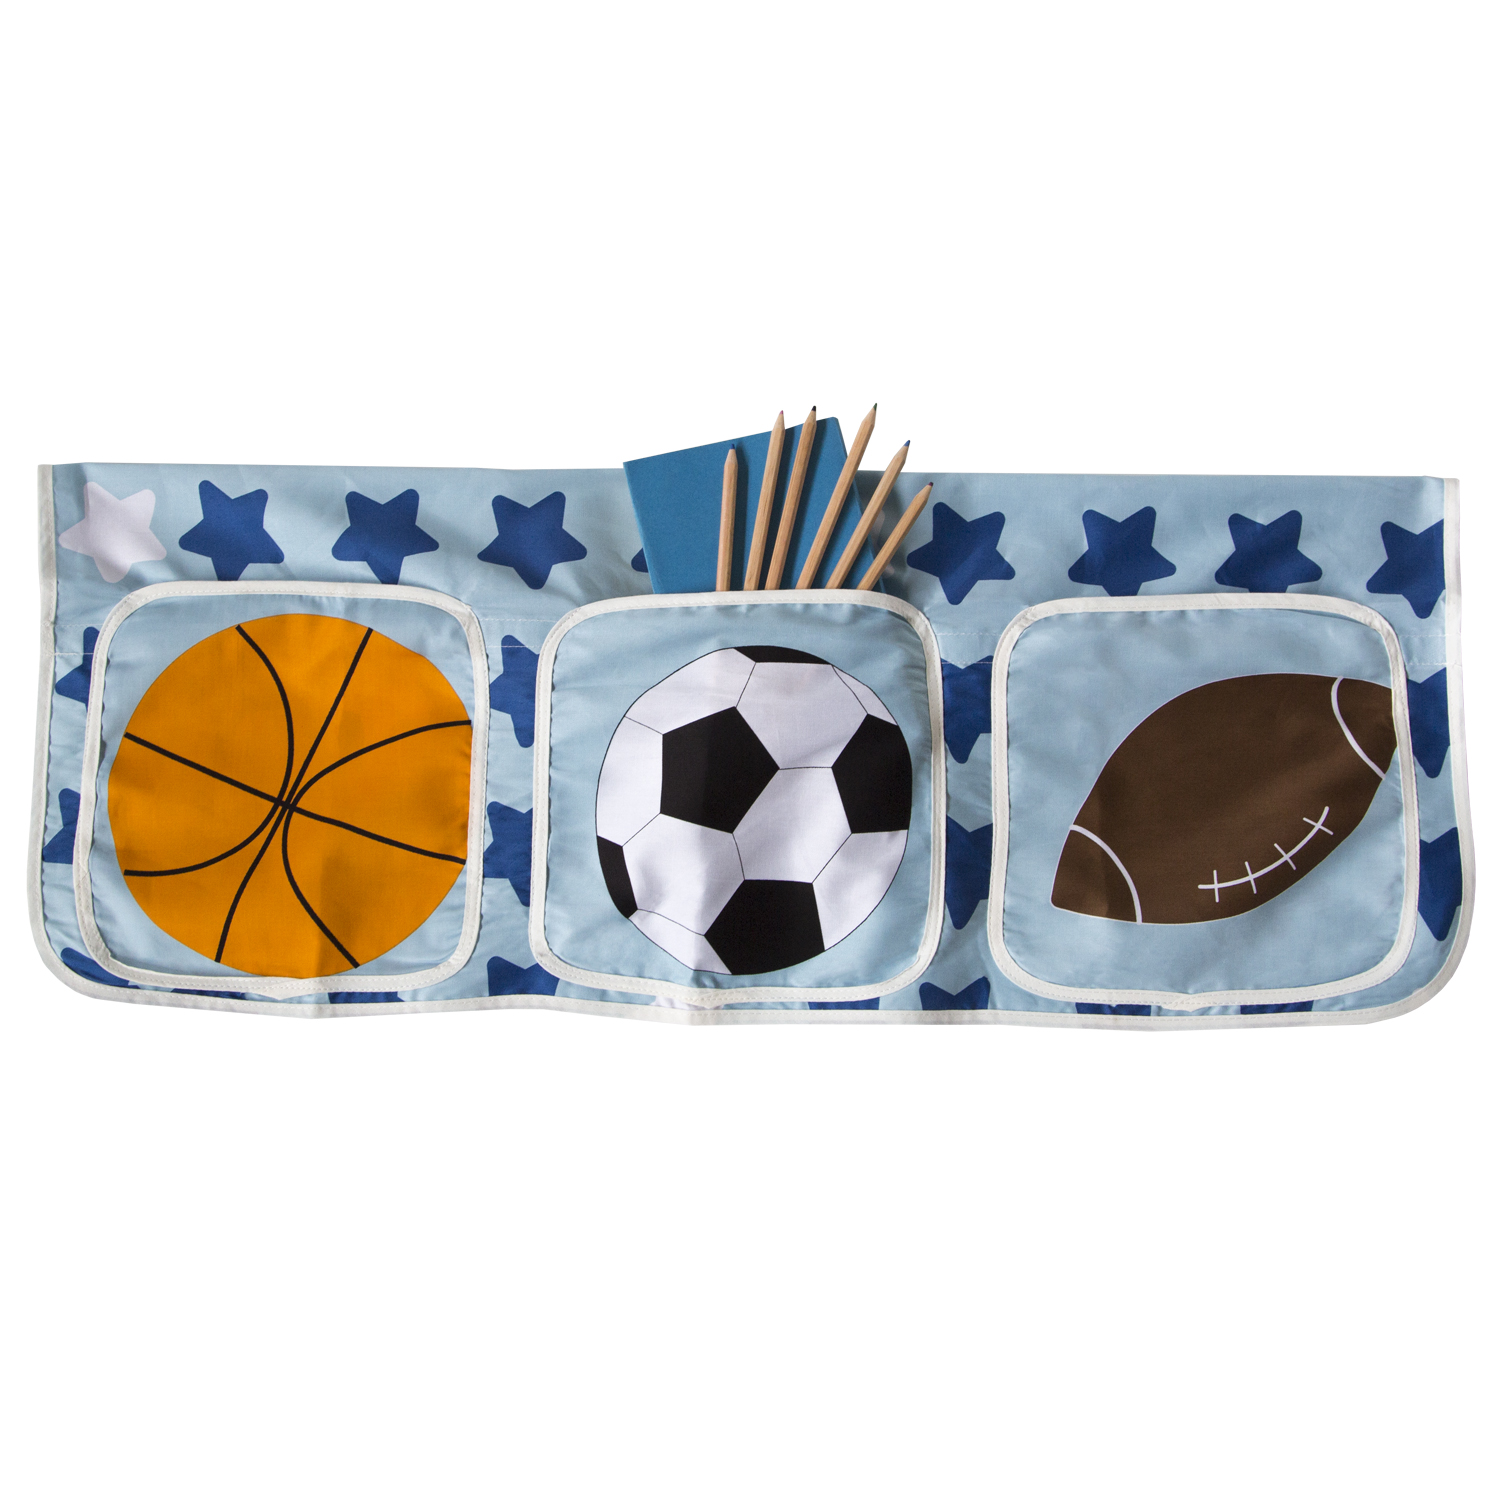 Betttasche Stofftasche für Hochbetten Tasche Kinderbett Blau Fußball Baumwolle